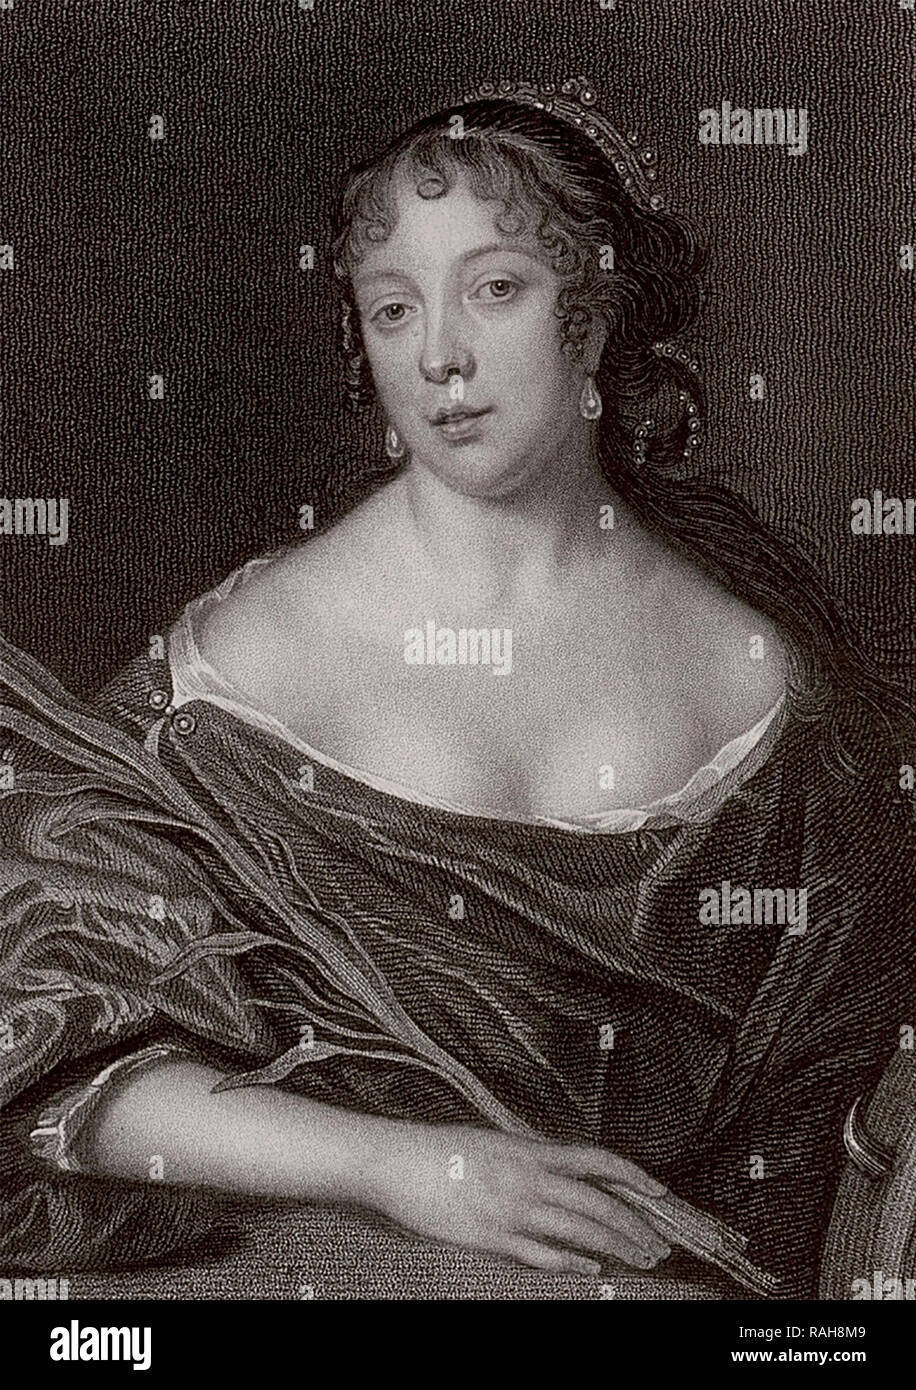 Elizabeth Pepys - Frau des Samuel Pepys - 1825 Drucken des 17. Jahrhunderts portrait Stockfoto